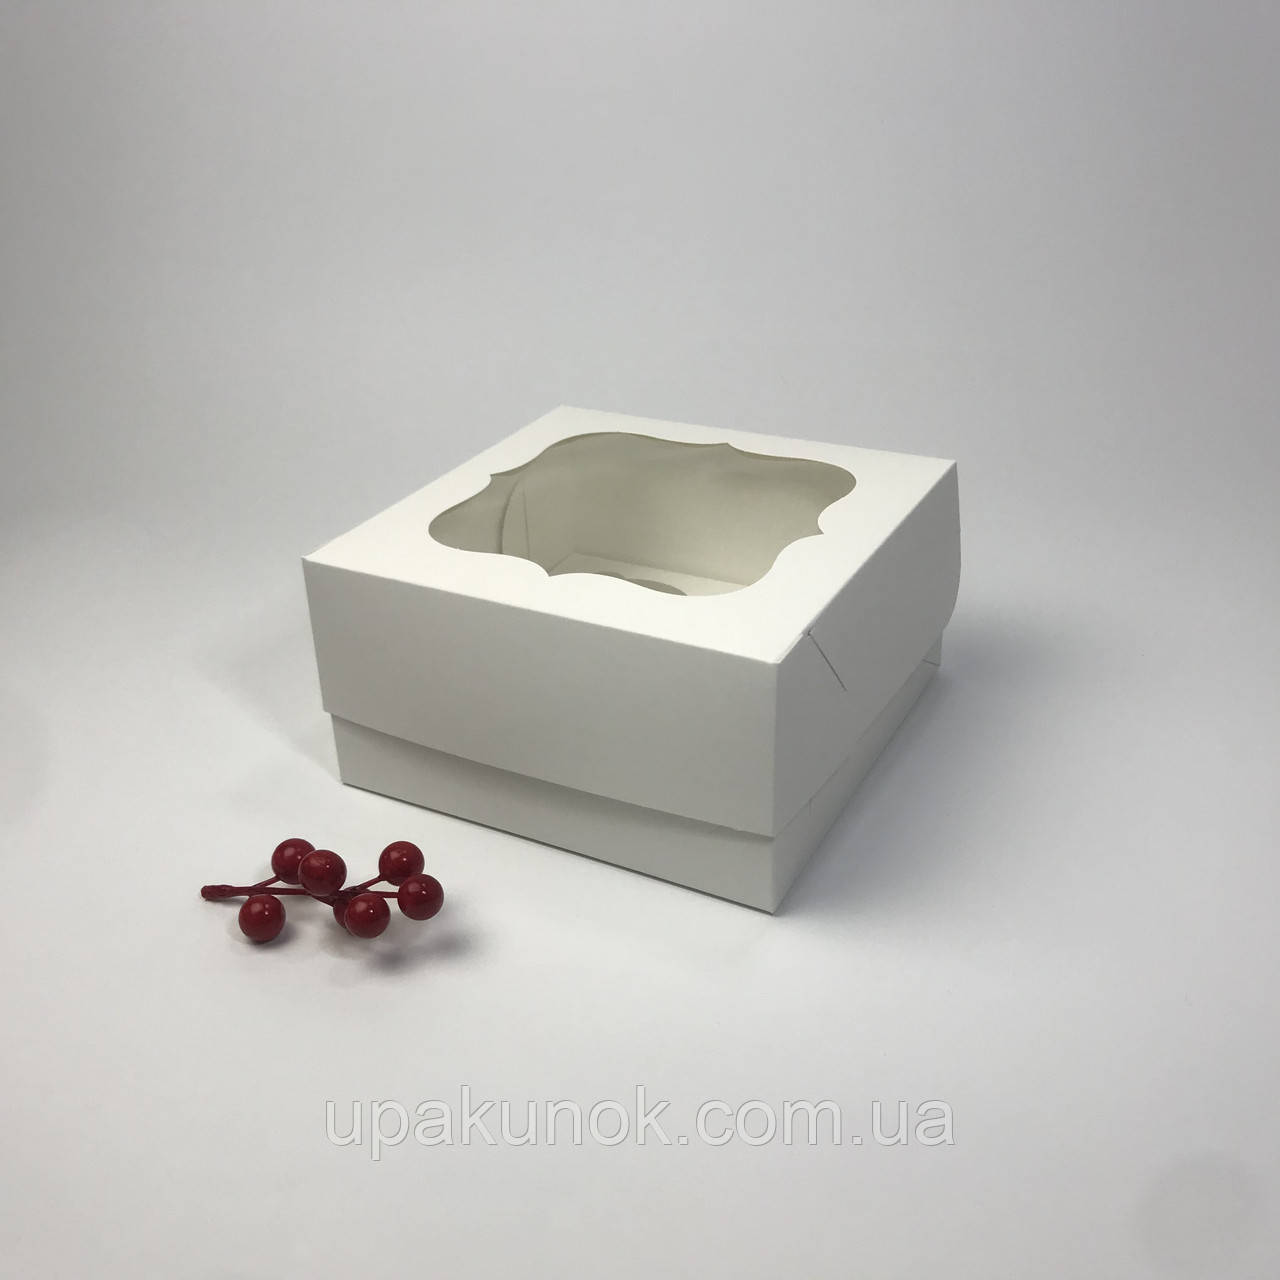 Коробка для капкейків (4 шт), 170*170*90 мм, з вікном, біла